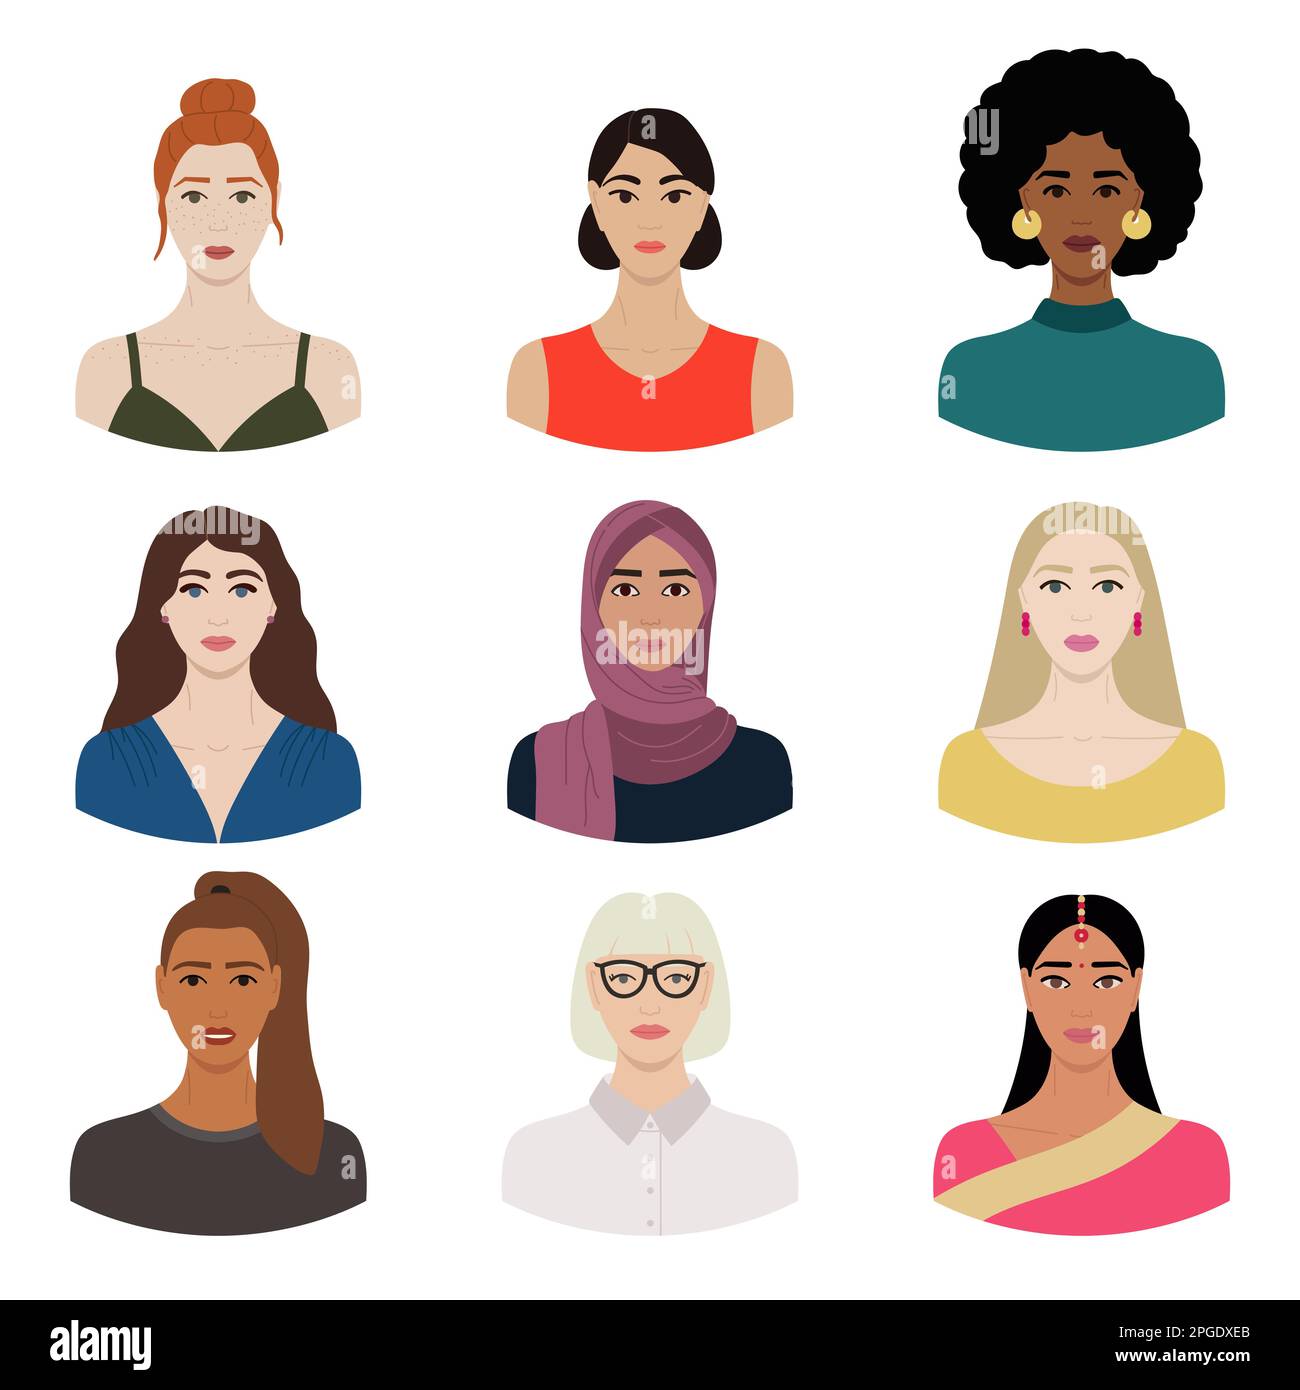 Ensemble de visages féminins divers avec différentes ethnies, couleurs de peau, coiffures. Collection de portraits de femmes pour avatars dans les réseaux sociaux, communic Illustration de Vecteur